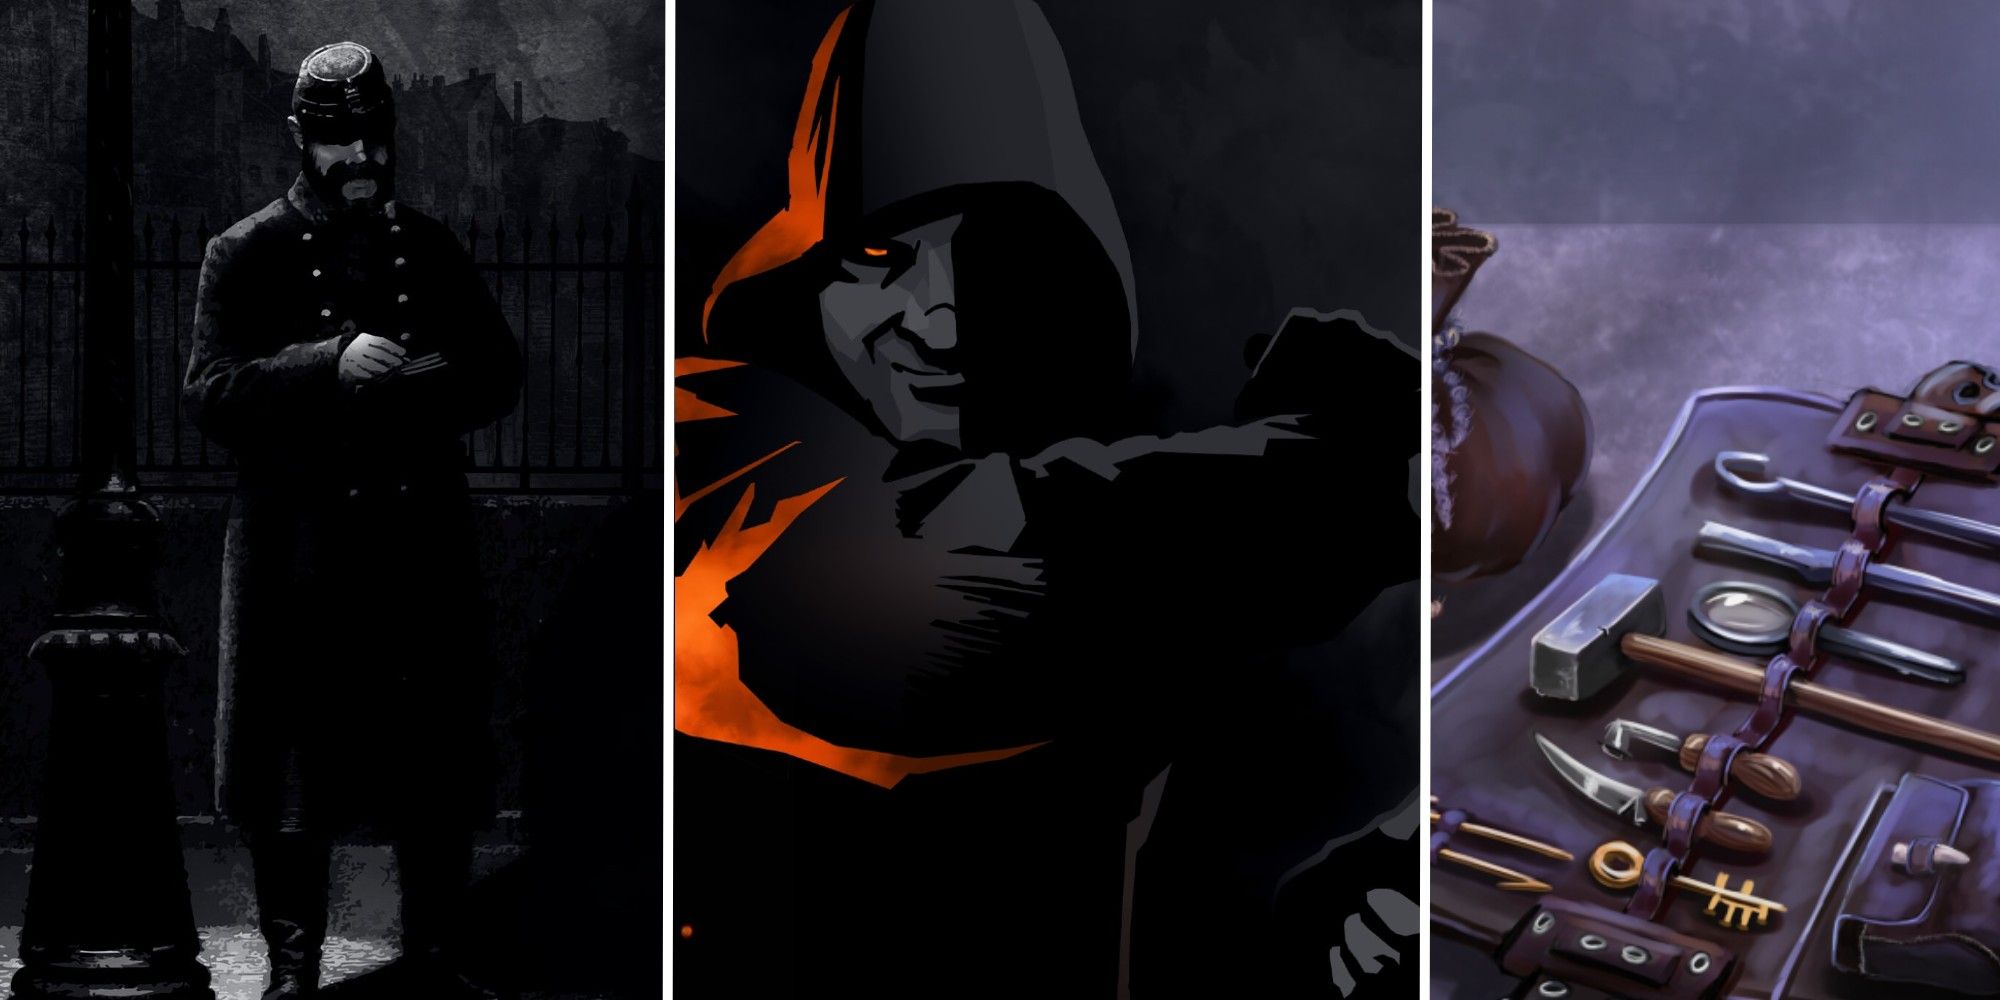 Play Blades in the Dark Online  Always Bet On The Underdog: Blades in the  Dark